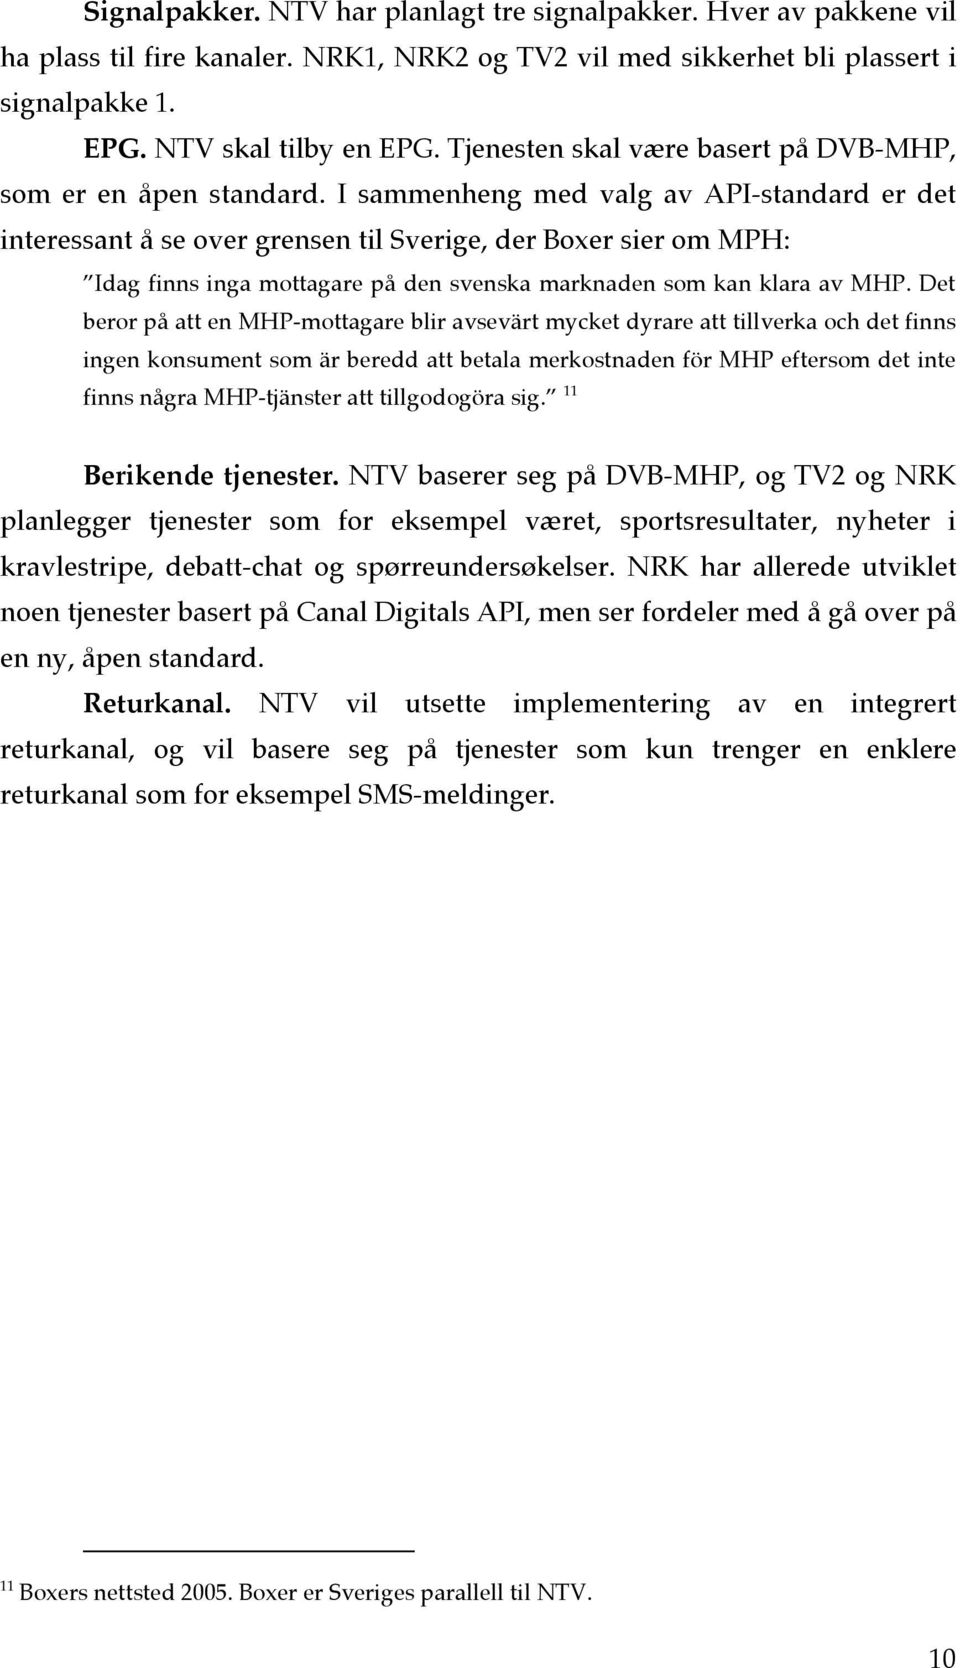 I sammenheng med valg av API-standard er det interessant å se over grensen til Sverige, der Boxer sier om MPH: Idag finns inga mottagare på den svenska marknaden som kan klara av MHP.